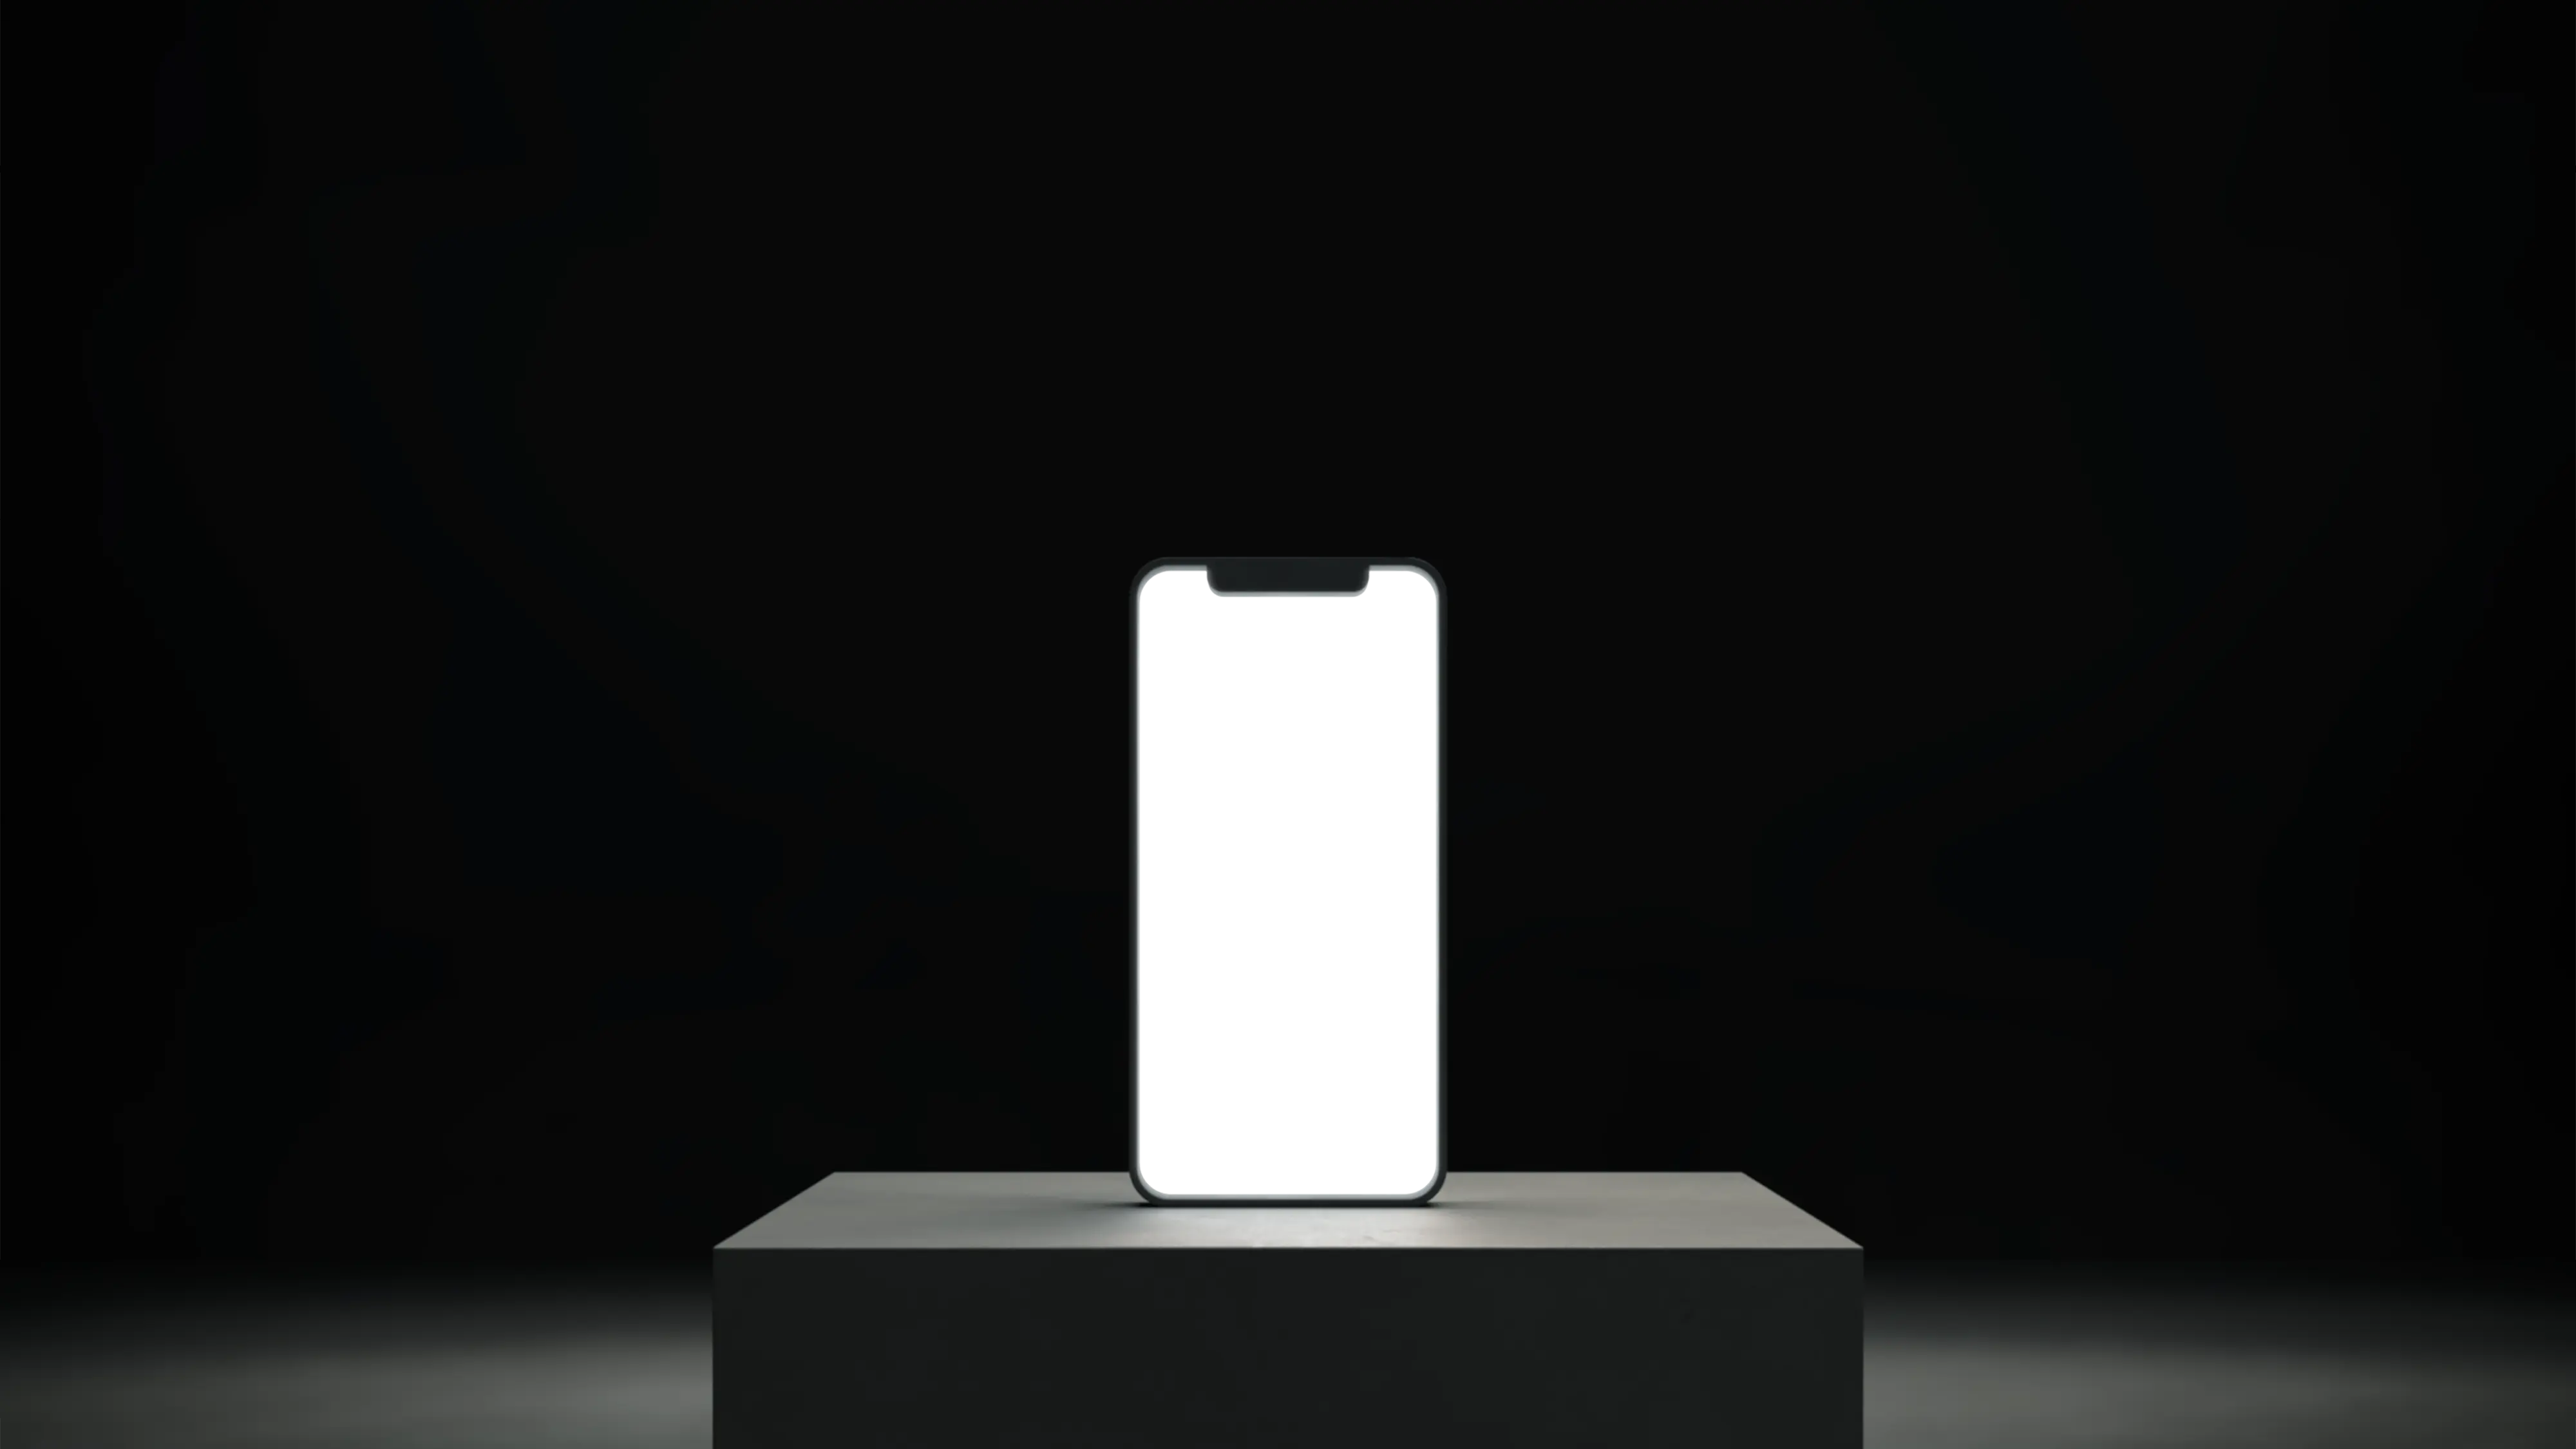 Ένα smartphone πάνω σε βάθρο με φωτισμένη κενή λευκή οθόνη.